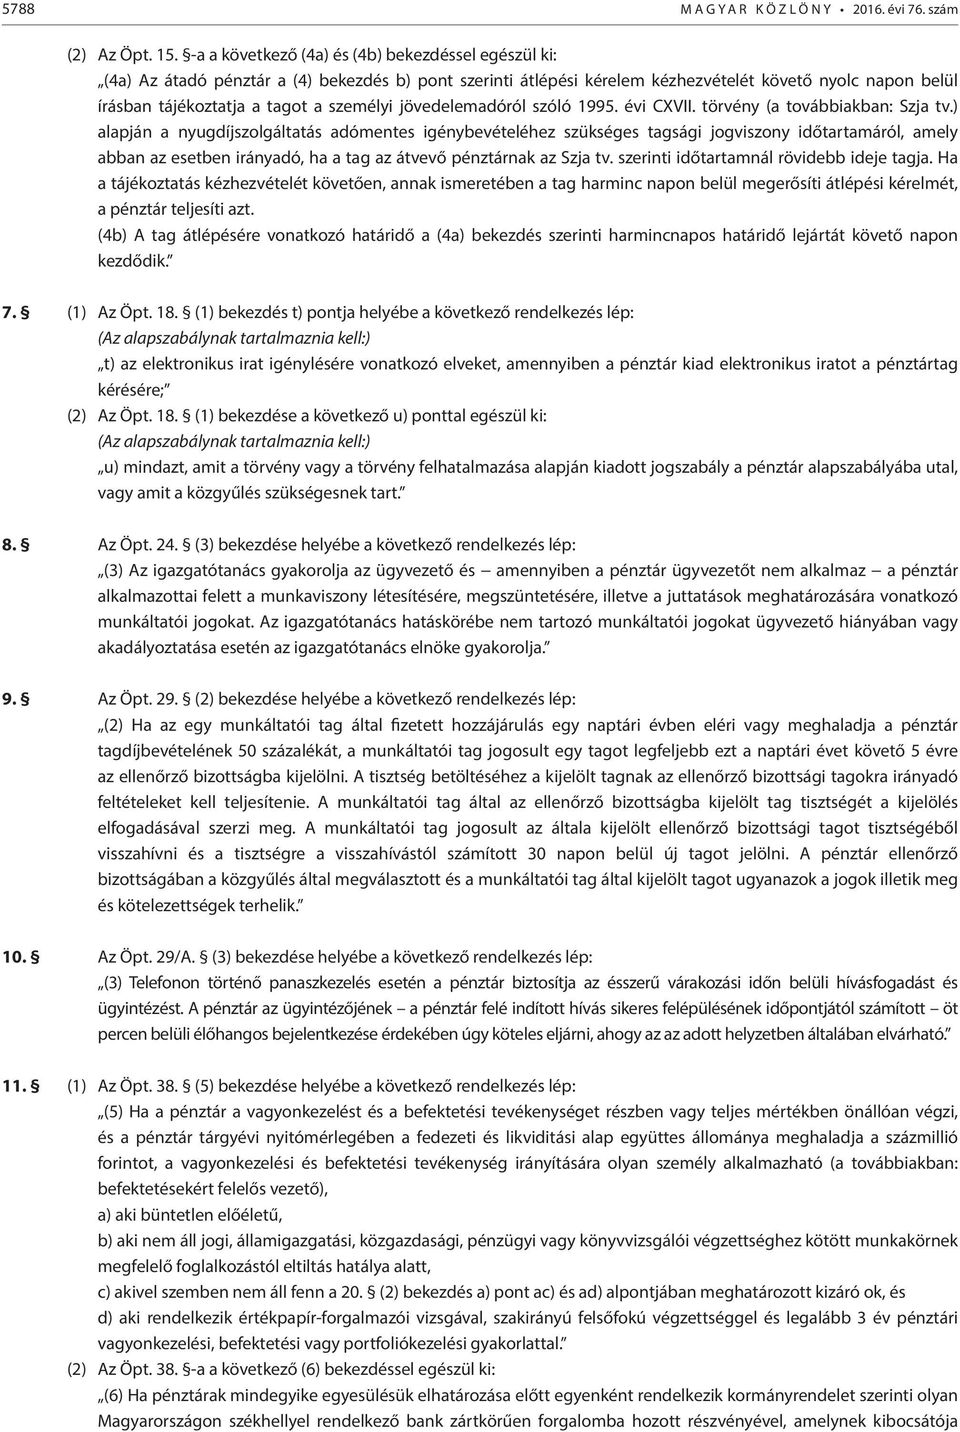 személyi jövedelemadóról szóló 1995. évi CXVII. törvény (a továbbiakban: Szja tv.